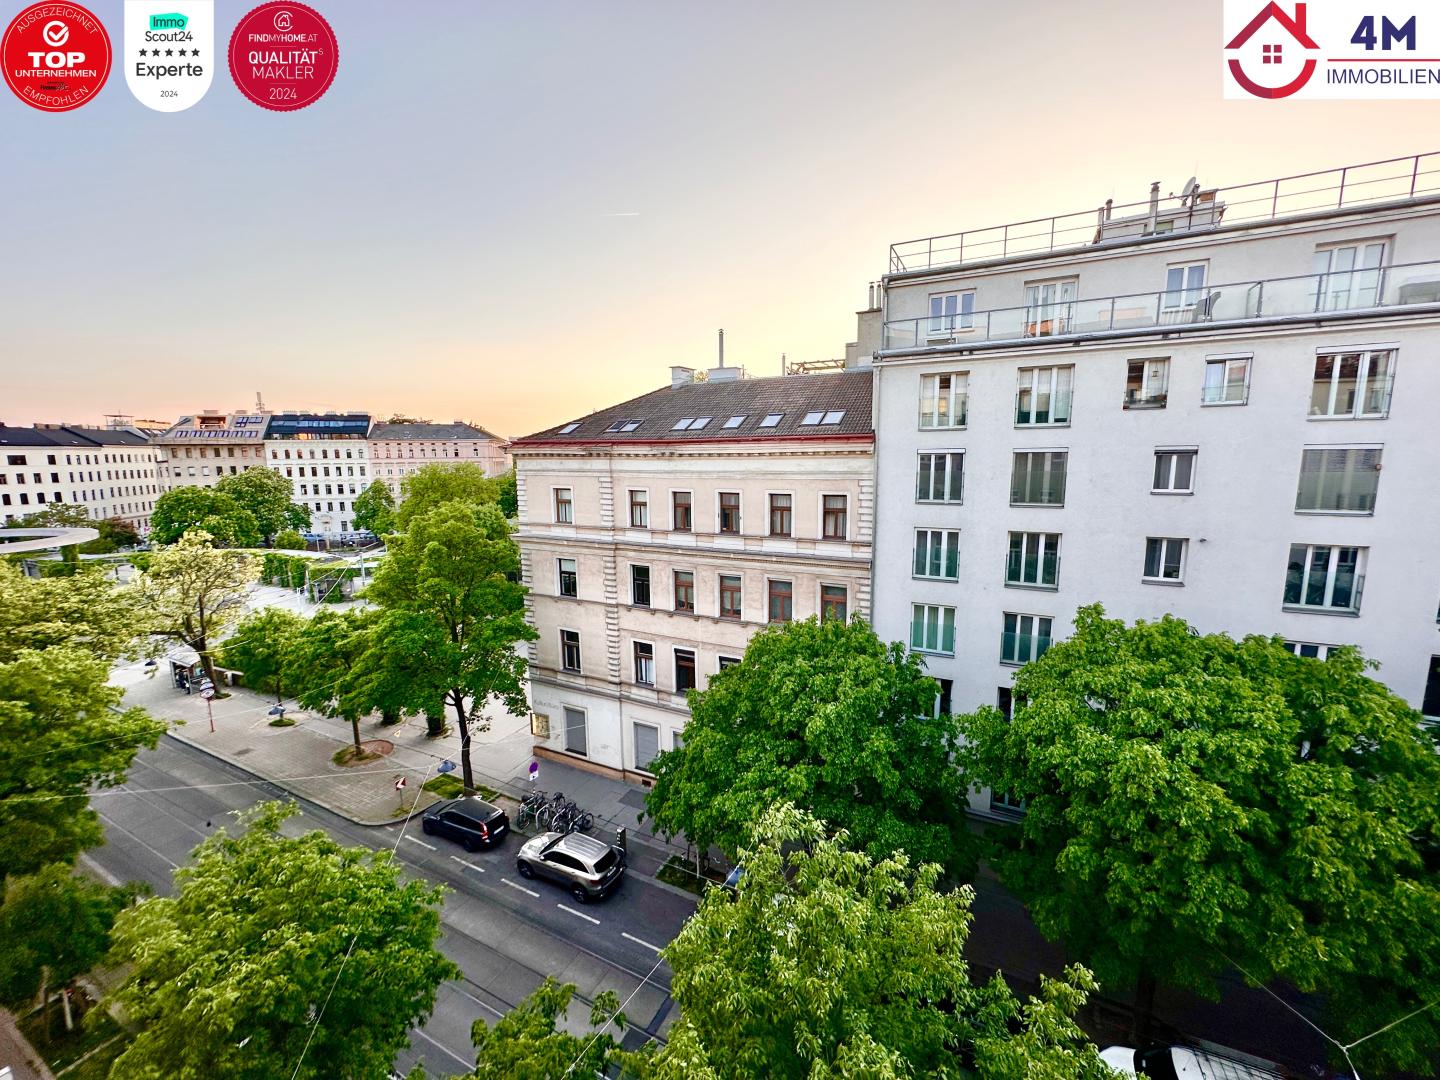 Top Preis!!! Sonnige 2-Zimmer-Wohnung in zentraler Lage neben dem Augarten/ Gaußplatz